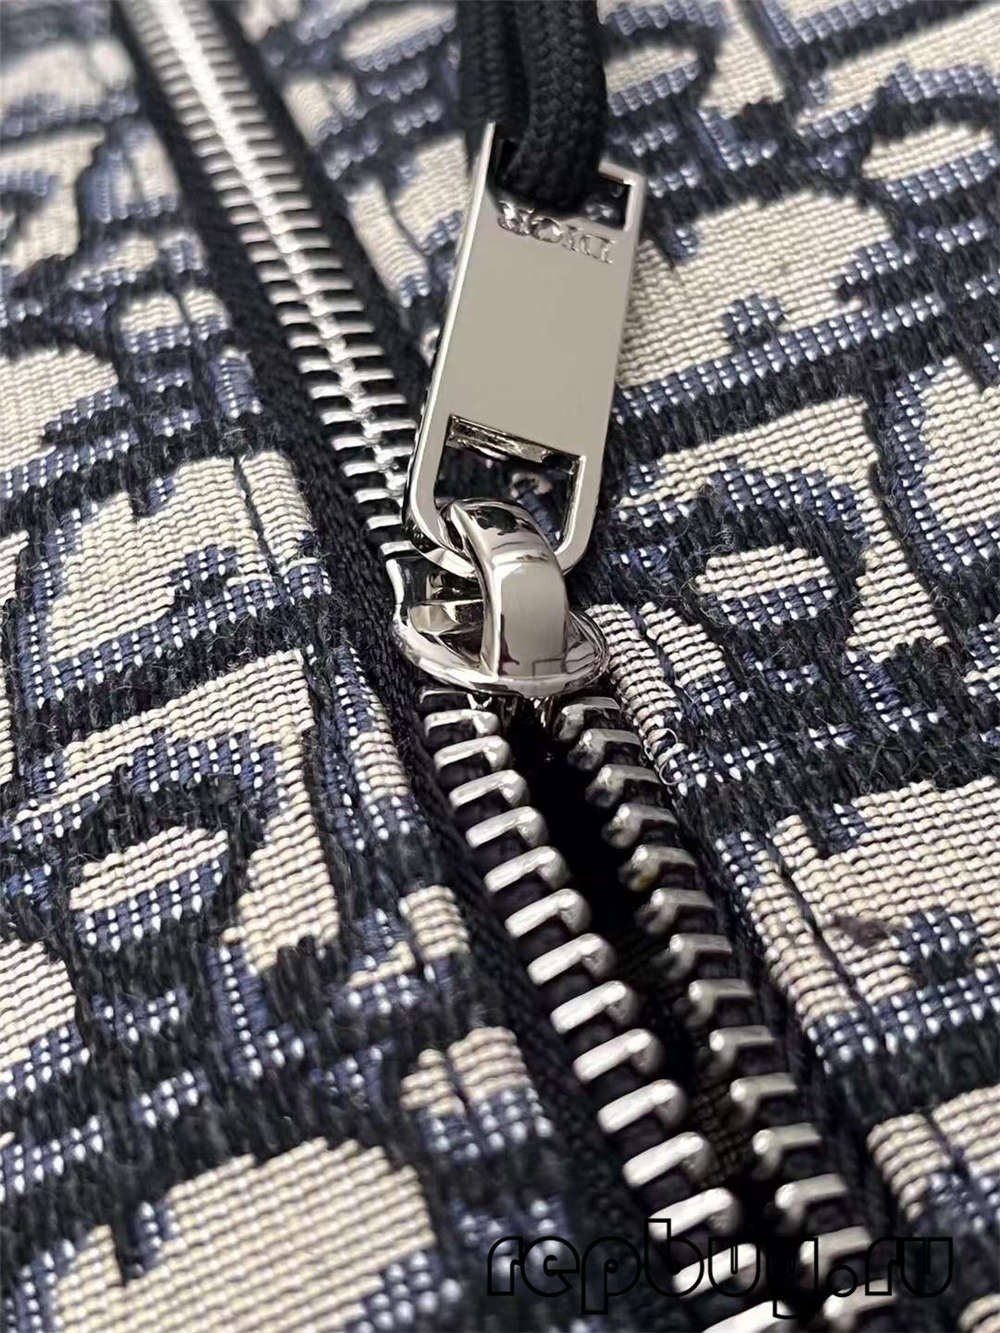 Dior Blue Embroidery Oblique Print Top replica duffel bag Hardware and Logo details (2022 Special)-Best Quality Fake designer Bag Review, Replica designer bag ru